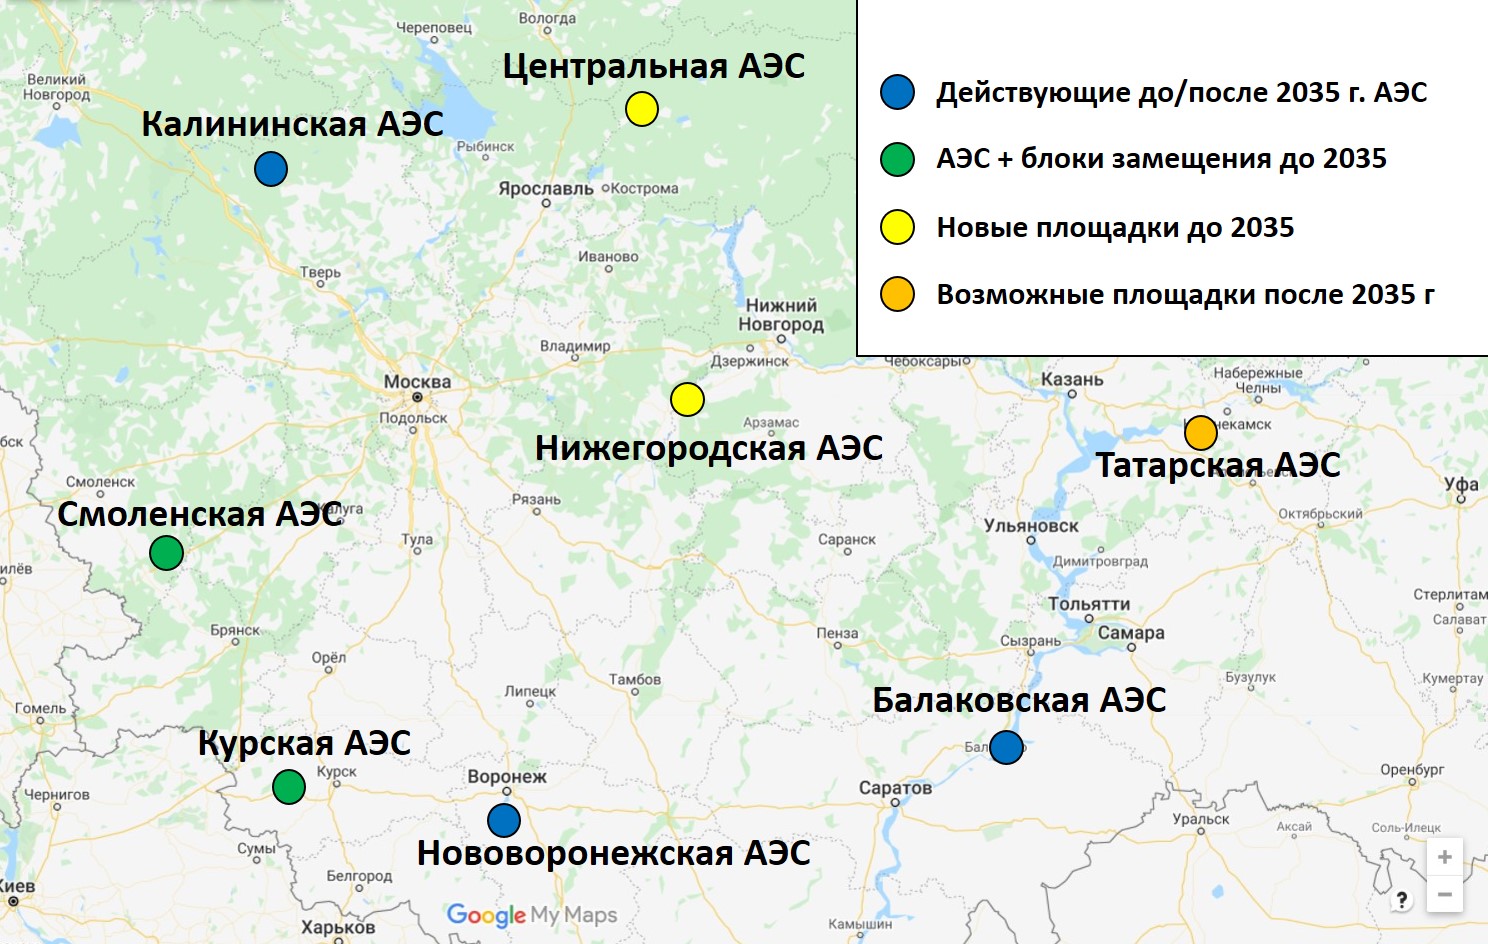 Карта действующих и возможных АЭС в центральной России. Инфографика Дмитрия Горчакова